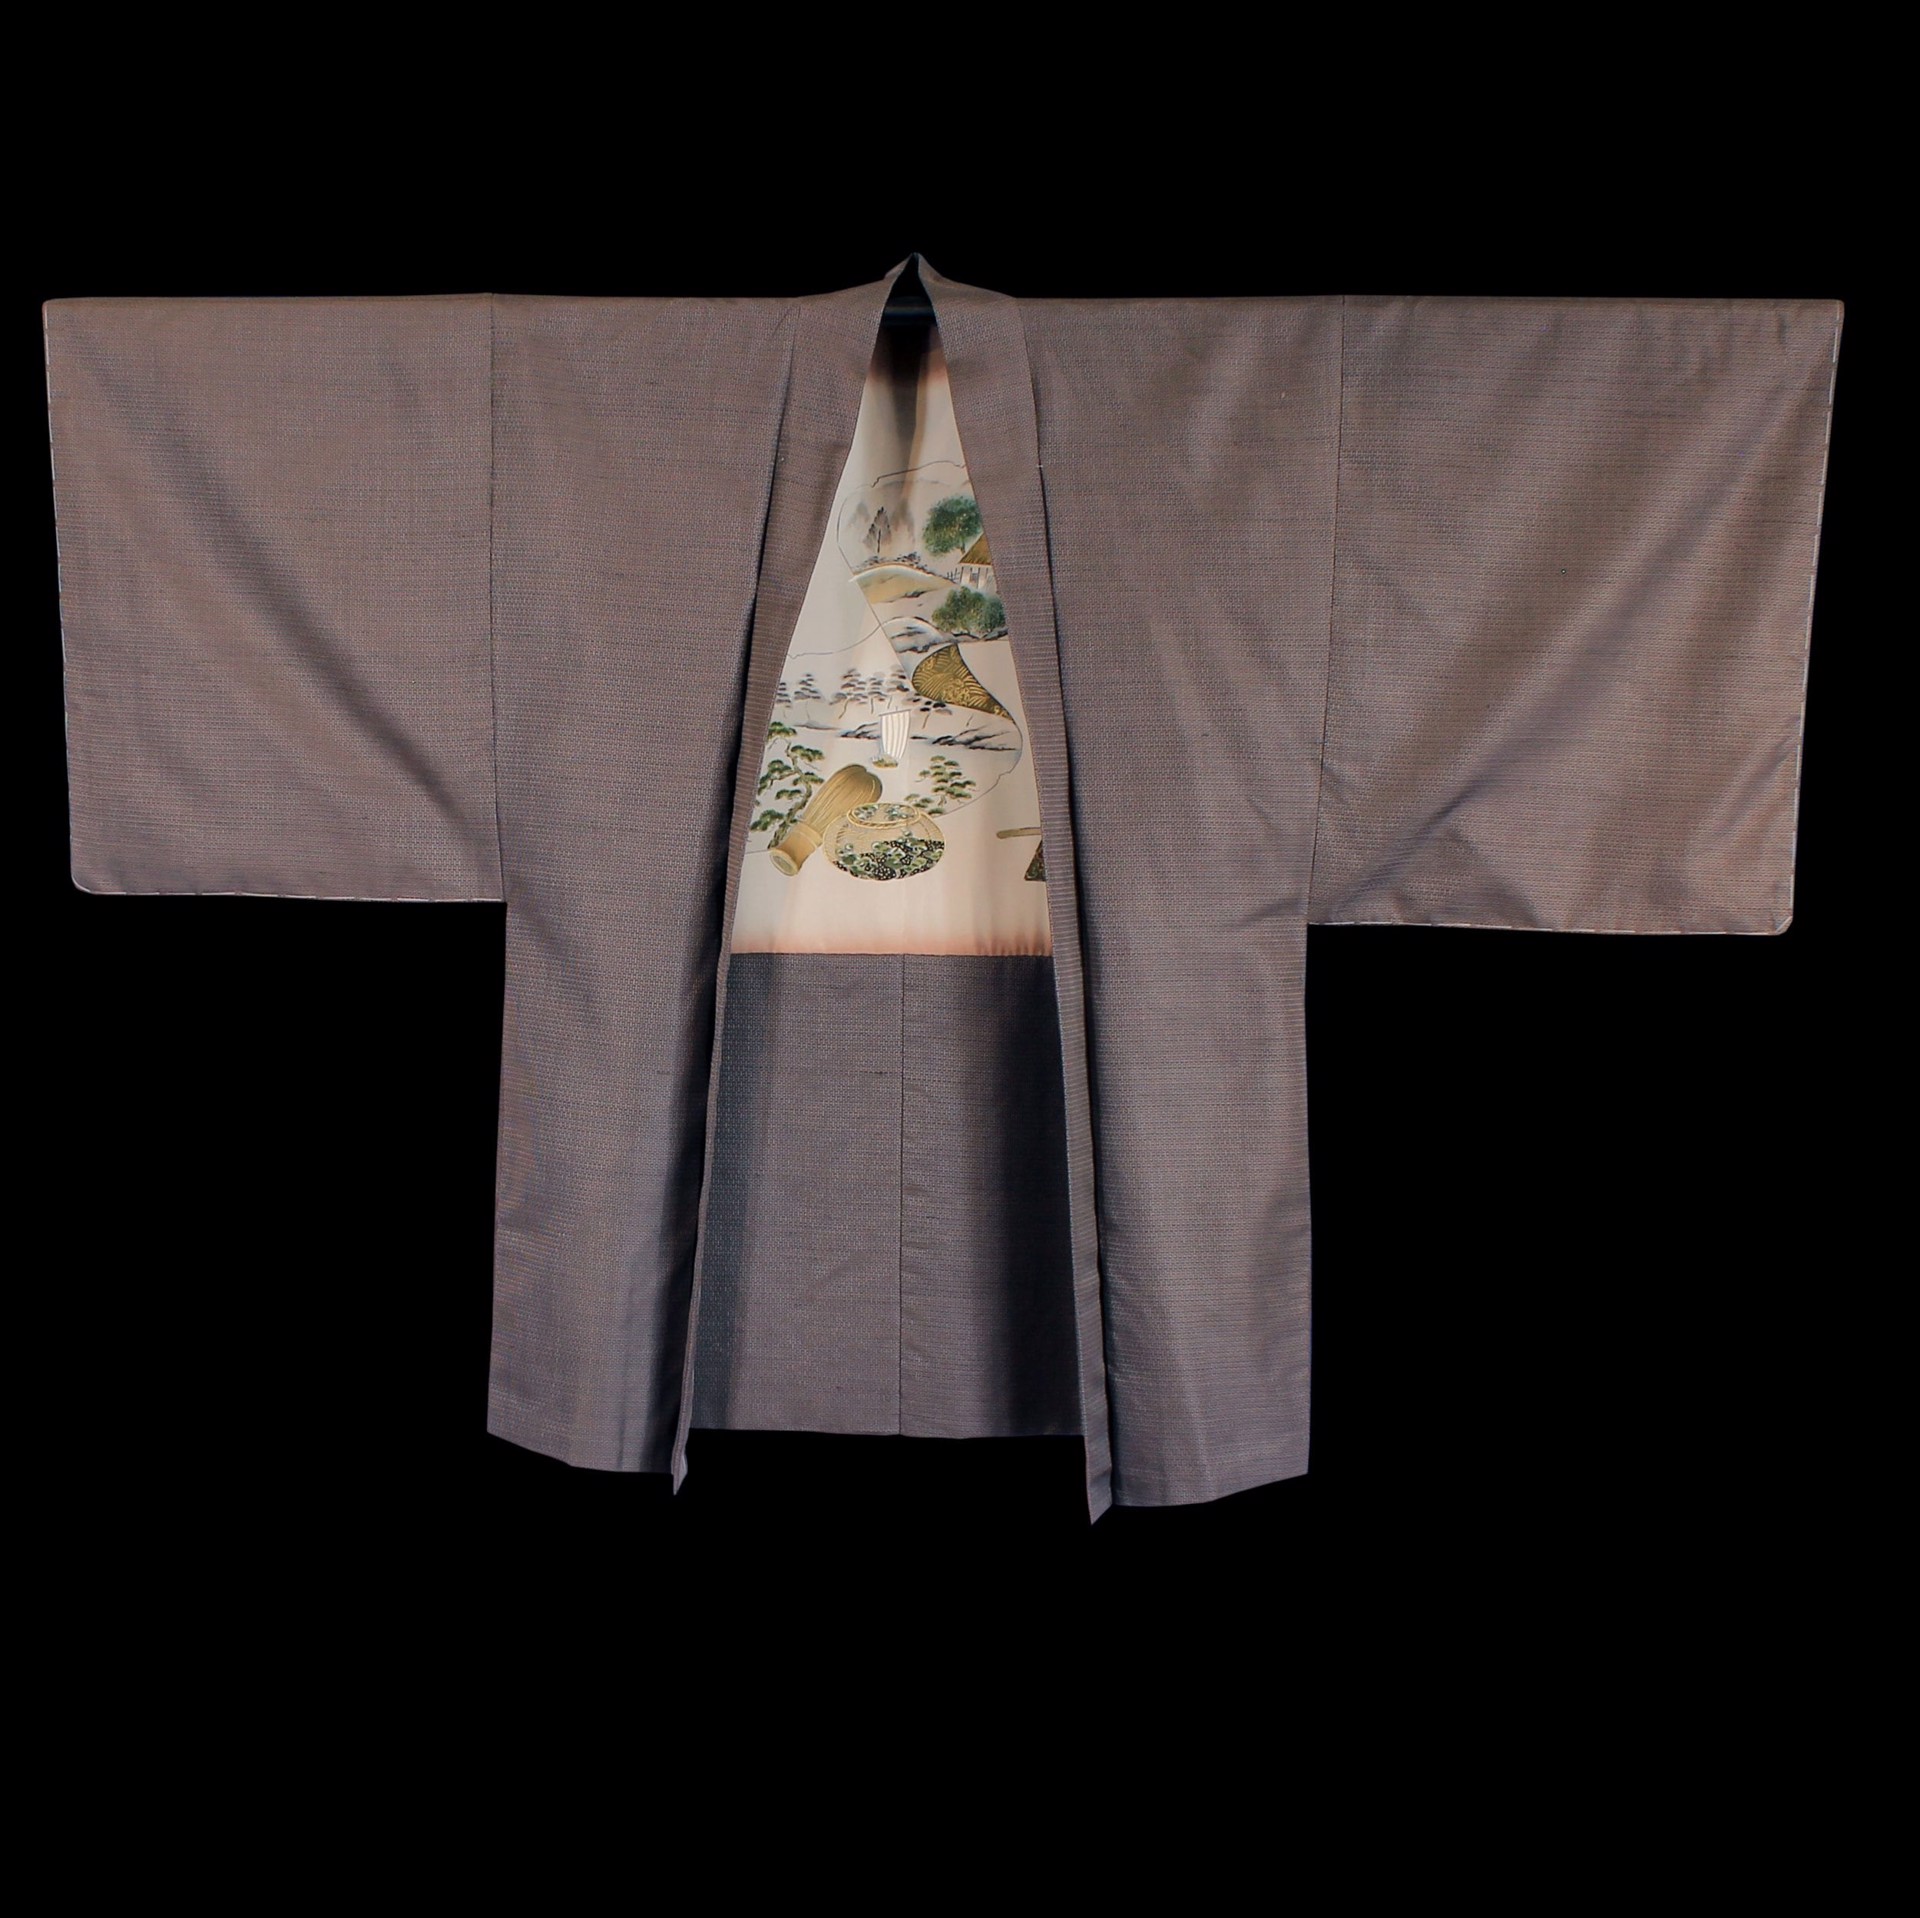  by Kimono